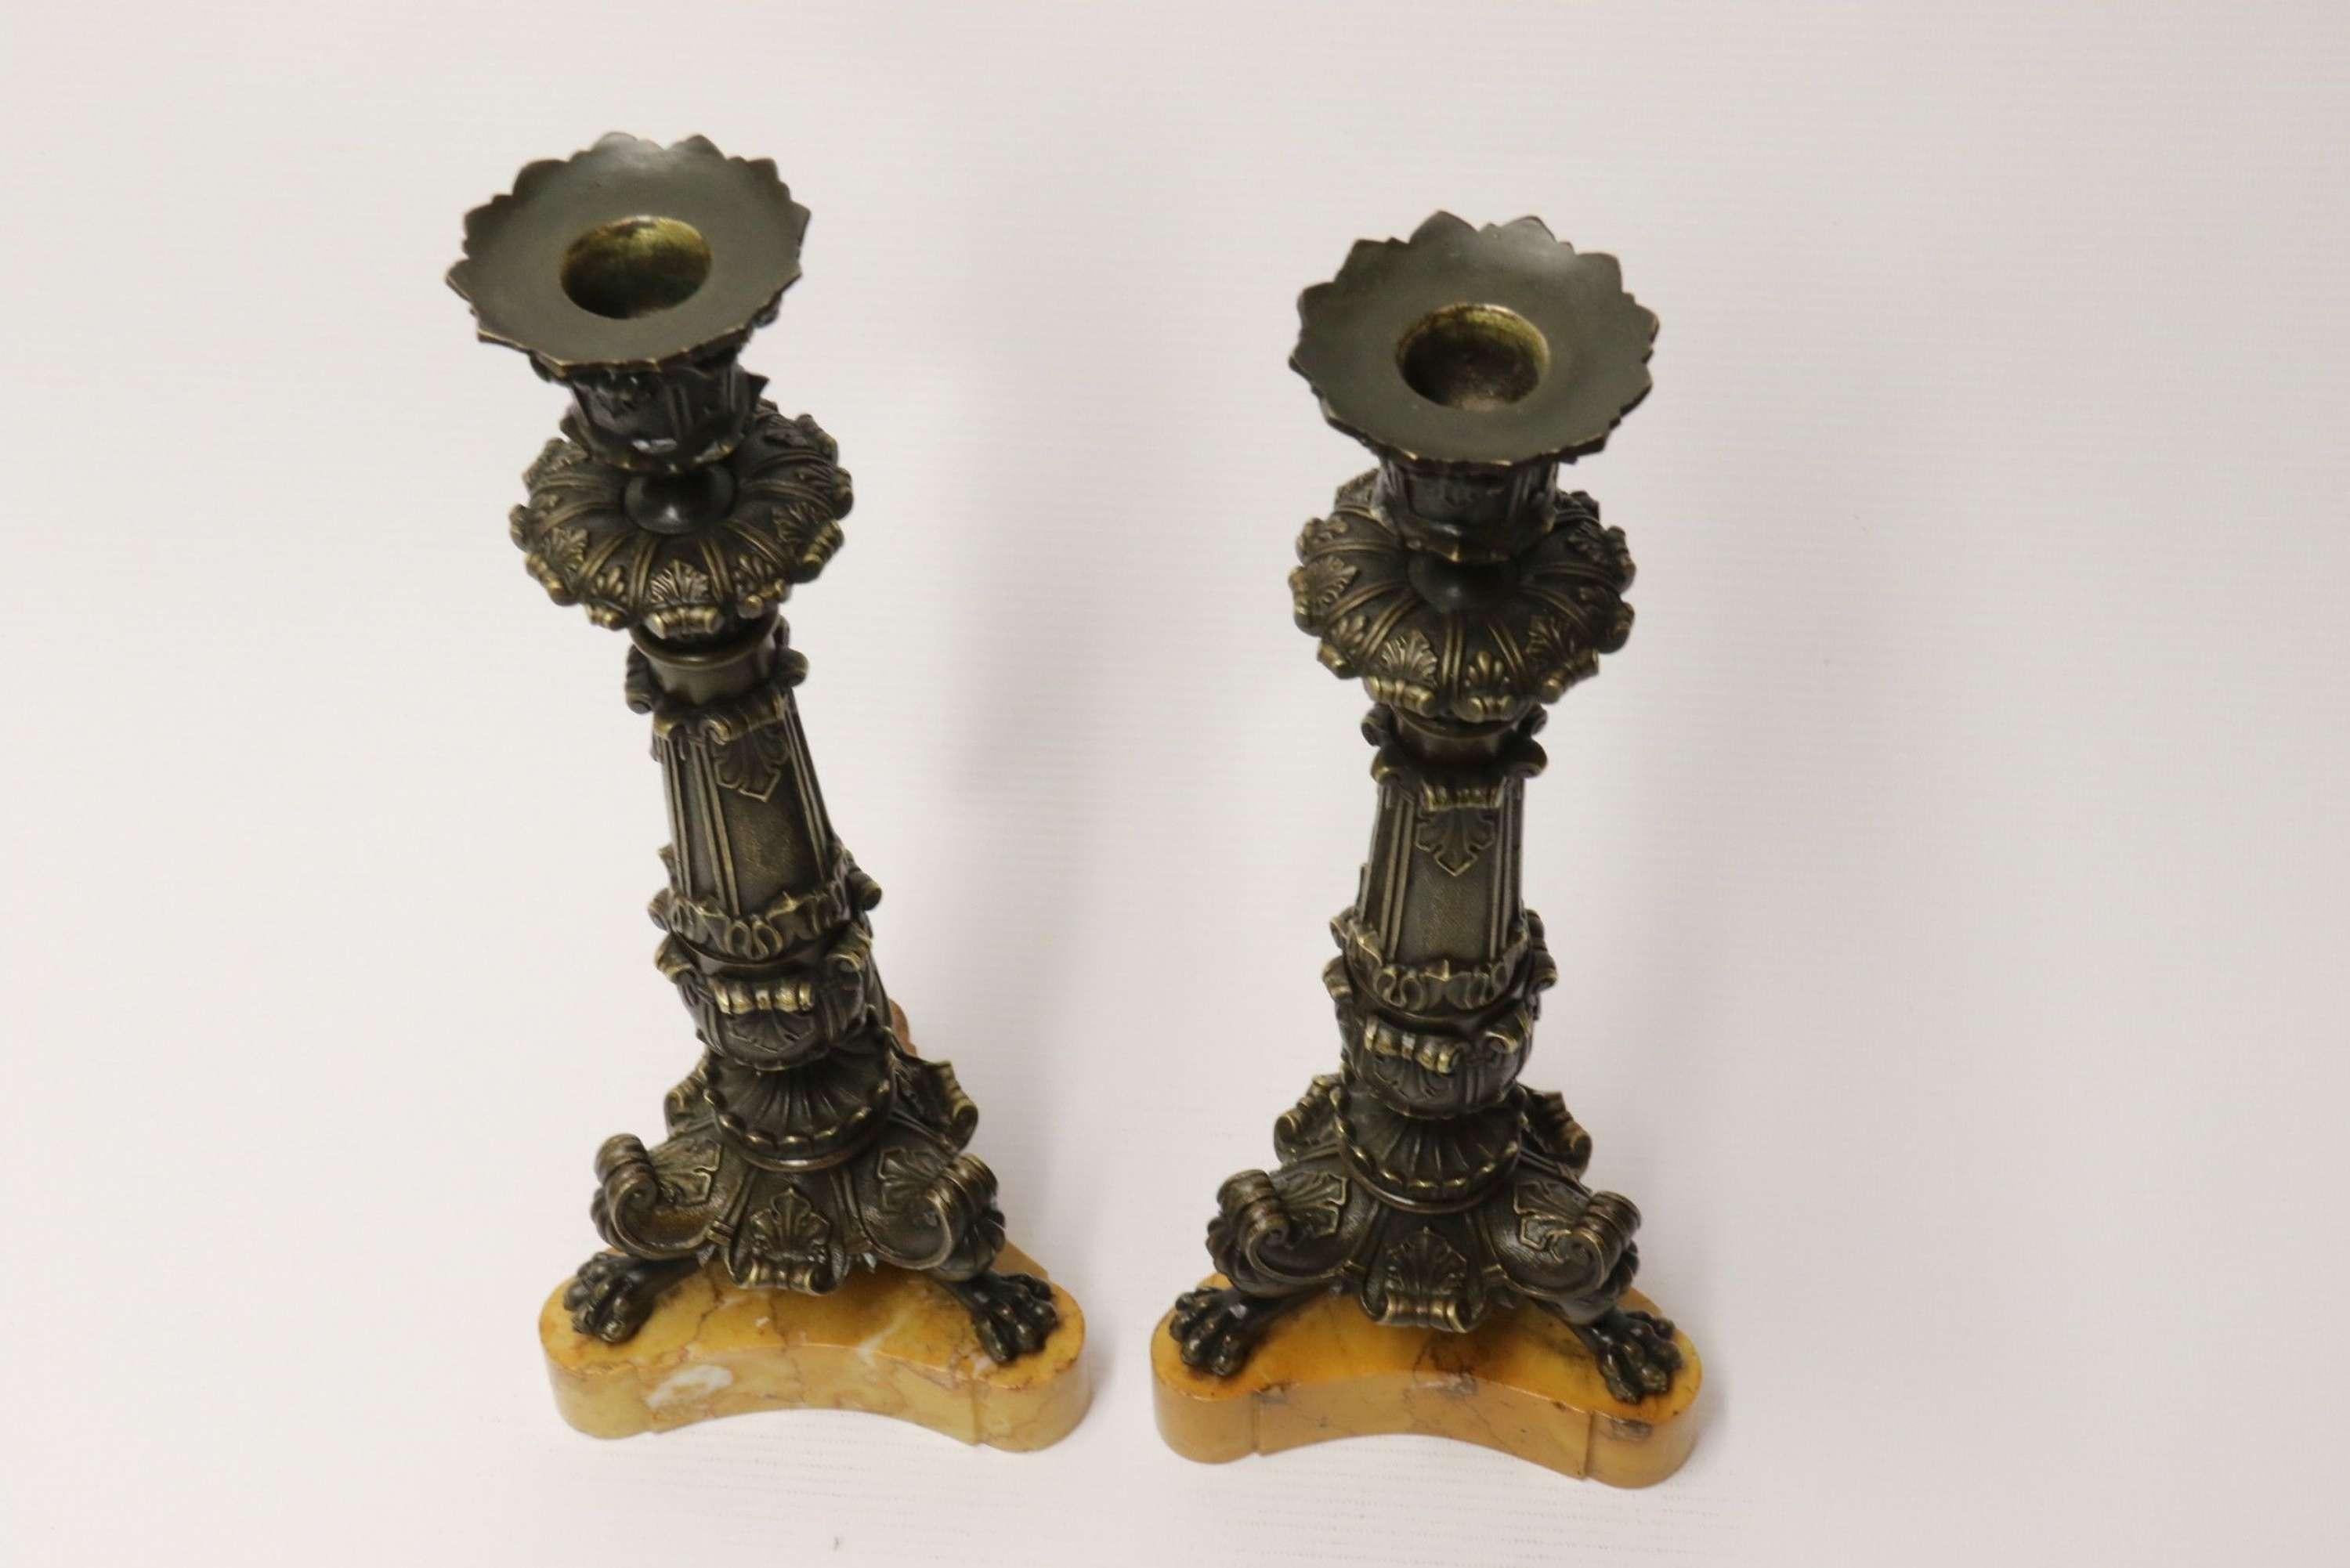 Ein hervorragendes Paar von frühen 19. C Französisch Reich Bronze Leuchter.

Dieses sehr schöne Paar französischer Kerzenständer aus dem frühen 19. Jahrhundert ist kunstvoll im Empire-Stil modelliert. Sie stehen auf geformten und polierten Sockeln